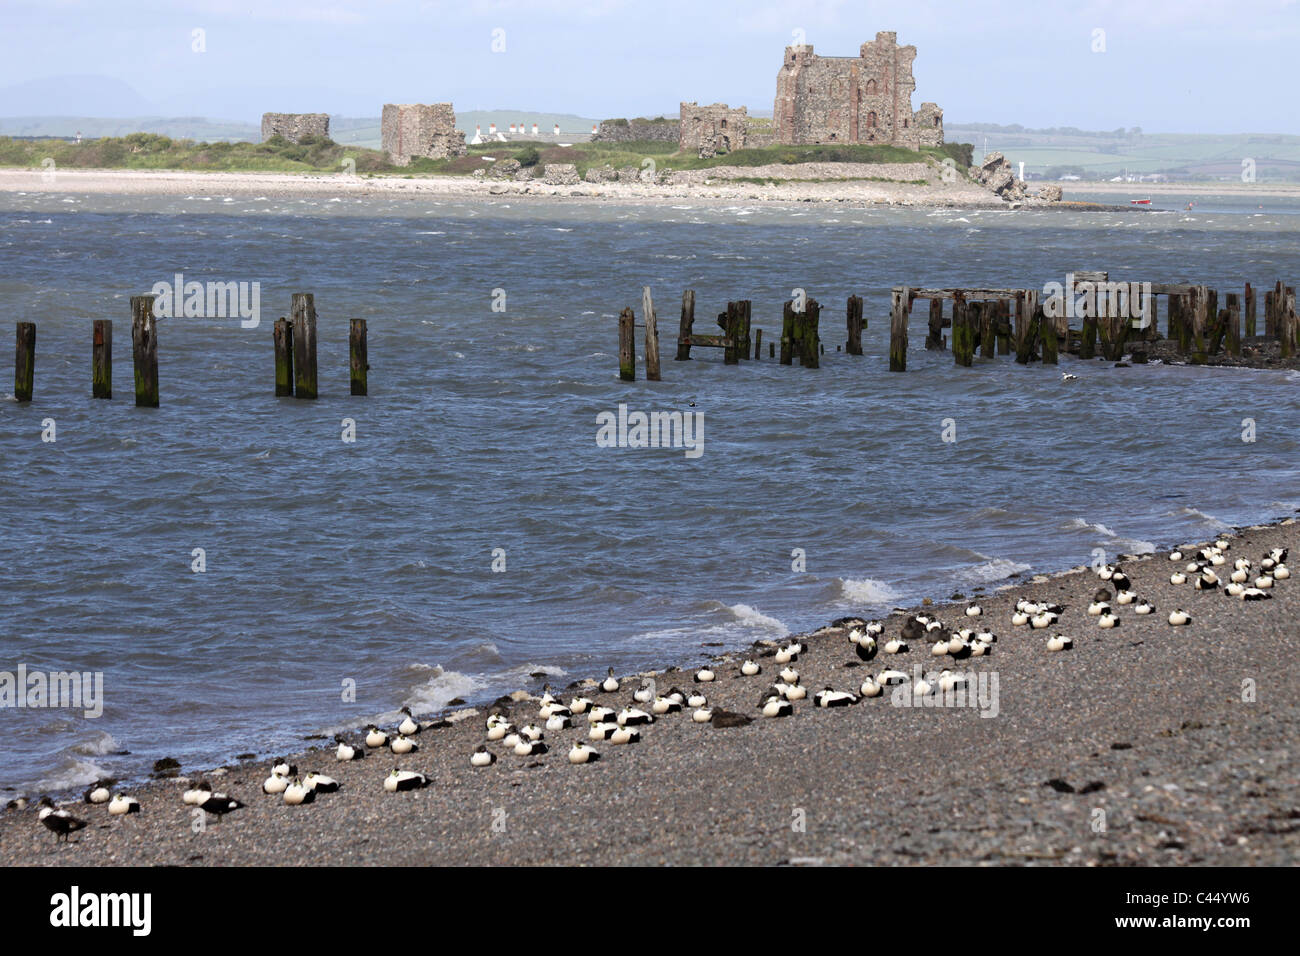 Les eiders se reposant sur la plage avec Piel Château en toile de fond, à l'Île Walney, Cumbria, UK Banque D'Images